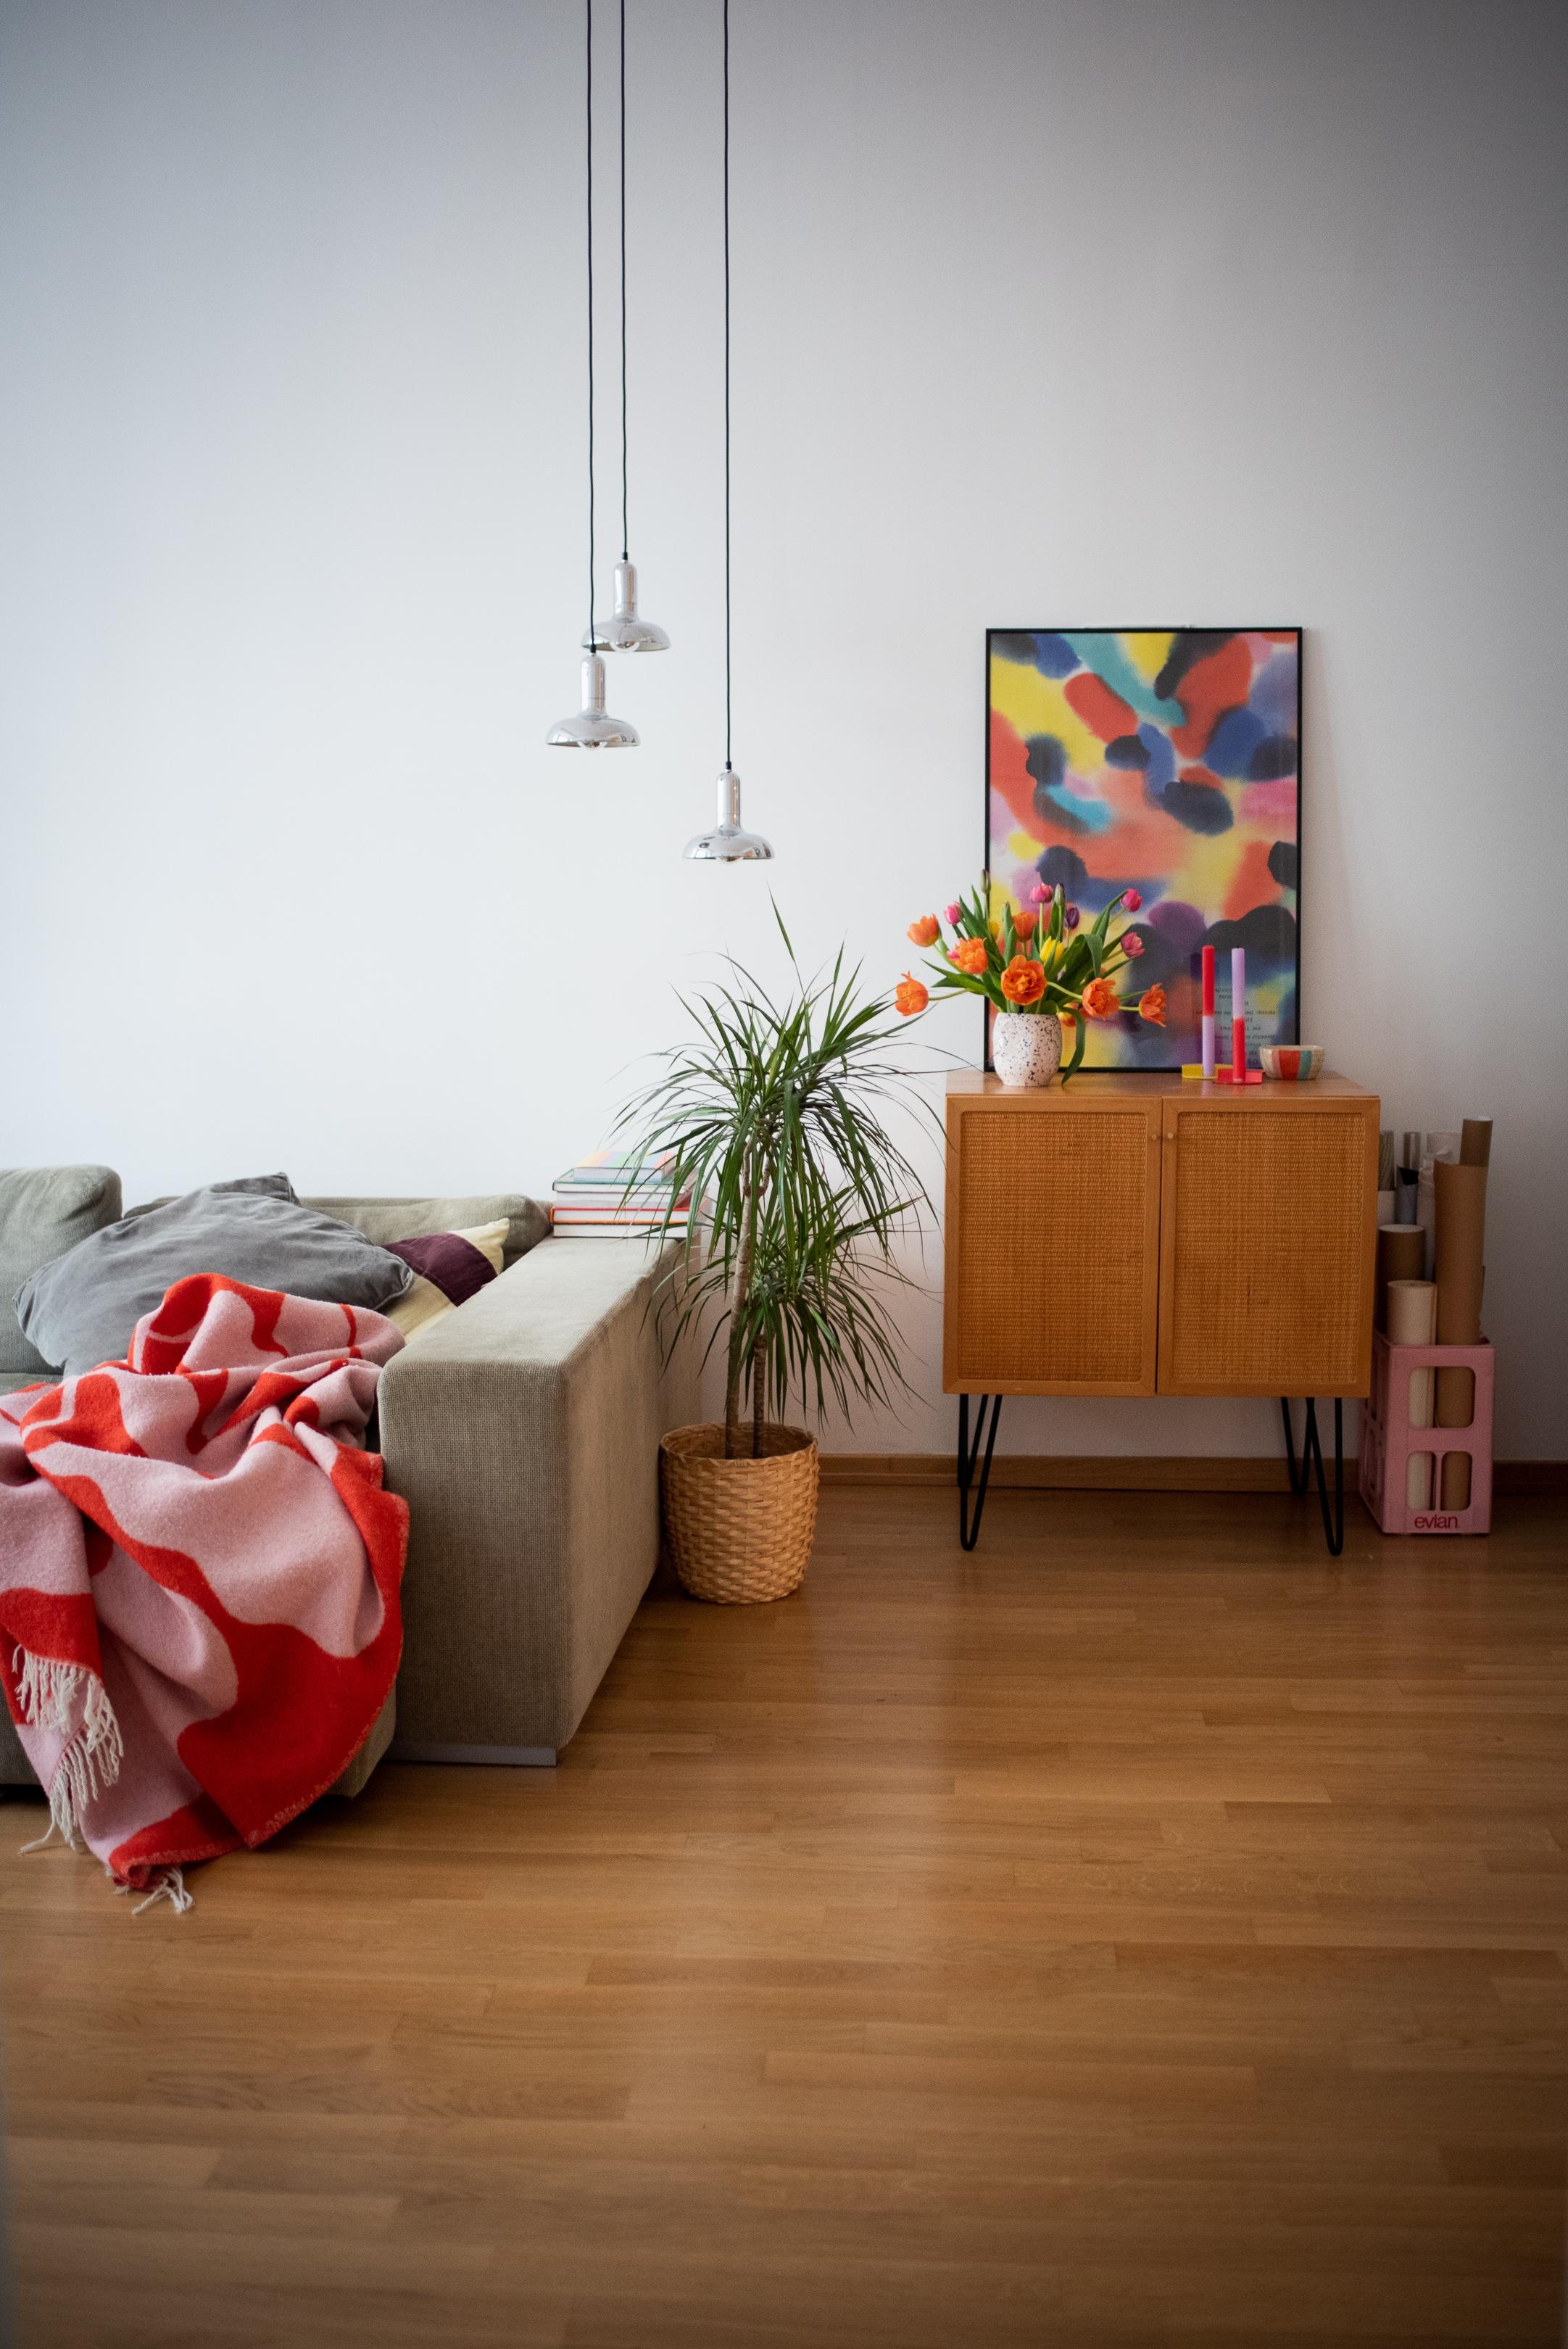 FREITAG! Habts gemütlich!!! #wohnzimmer #colourfulhome #livingroom #colourfulinterior #tulpen 